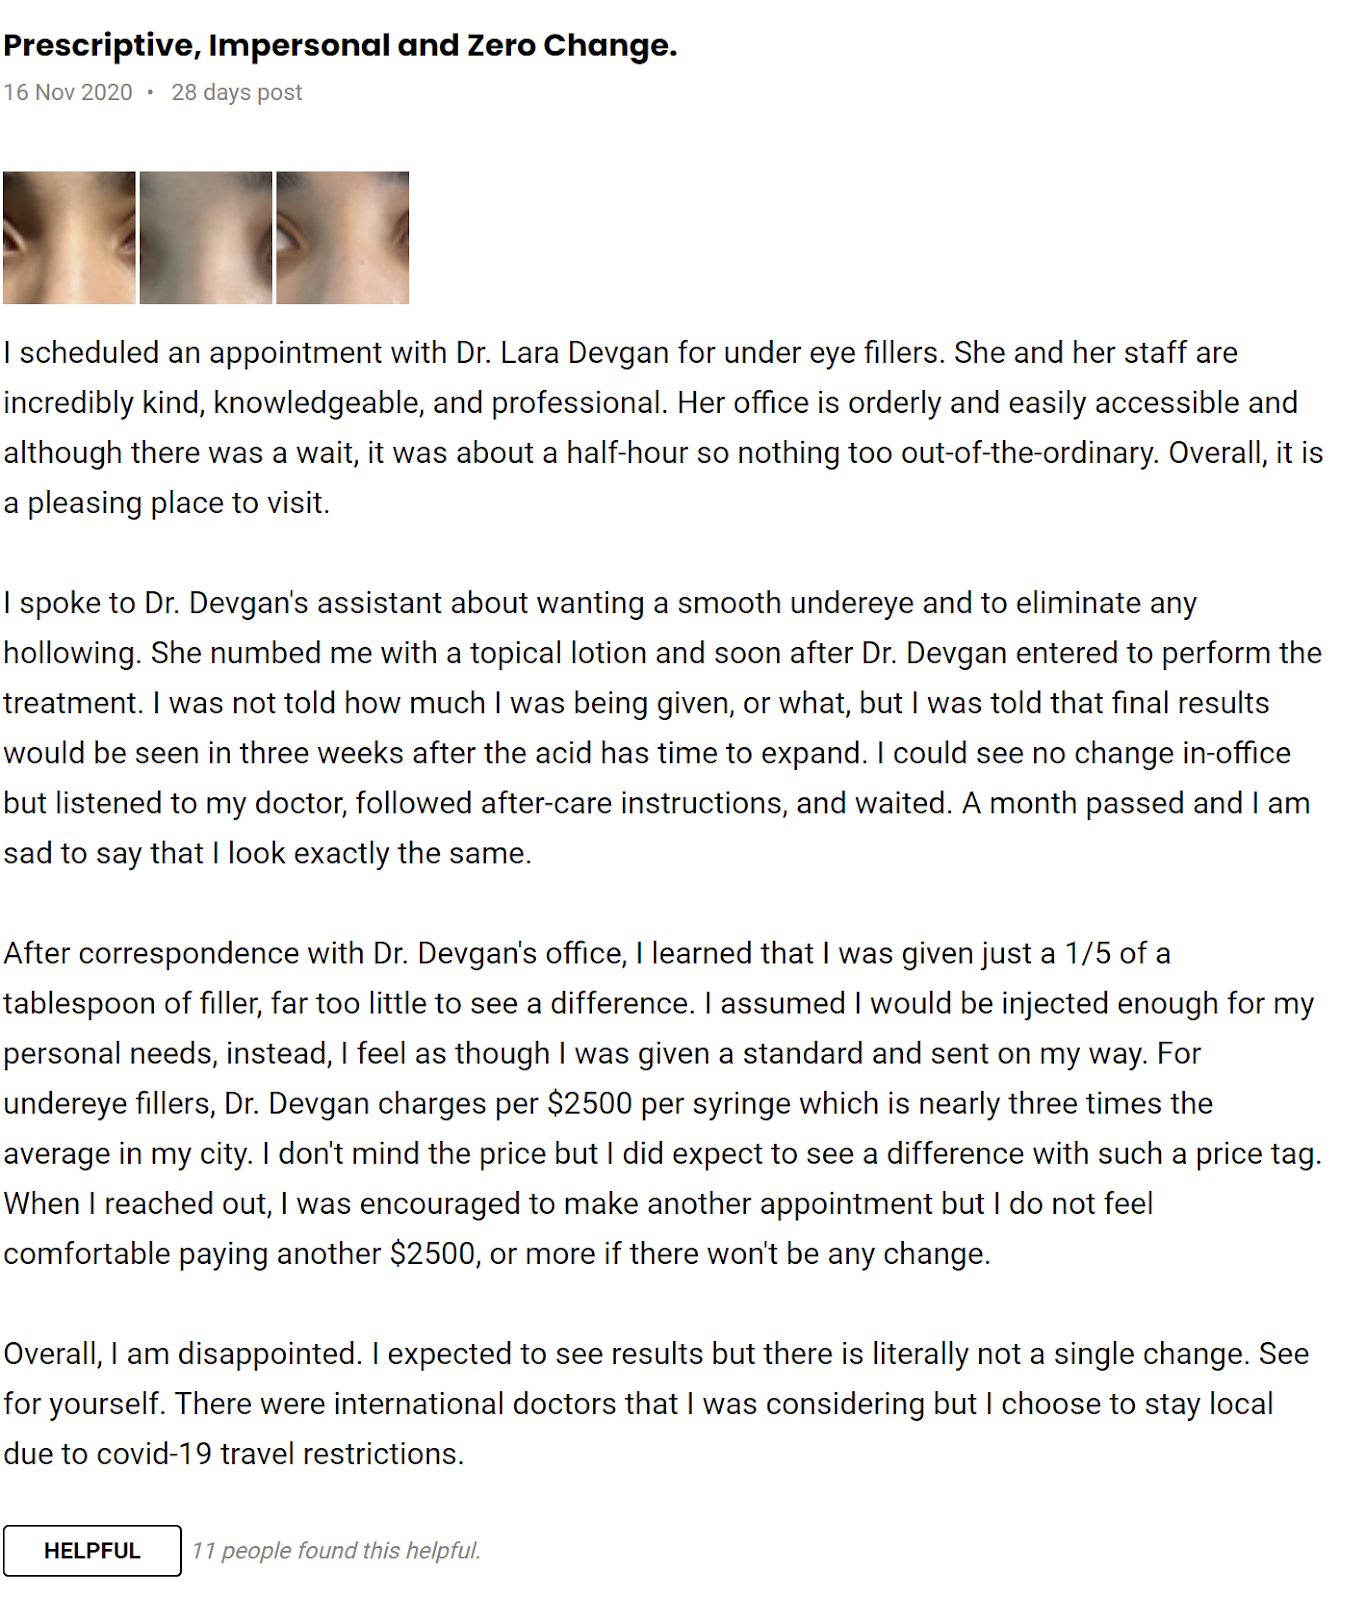 Dr. Lara Devgan reviews